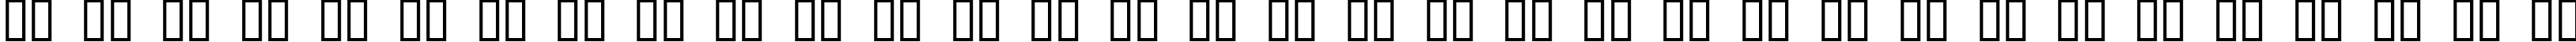 Пример написания русского алфавита шрифтом Hypersonic